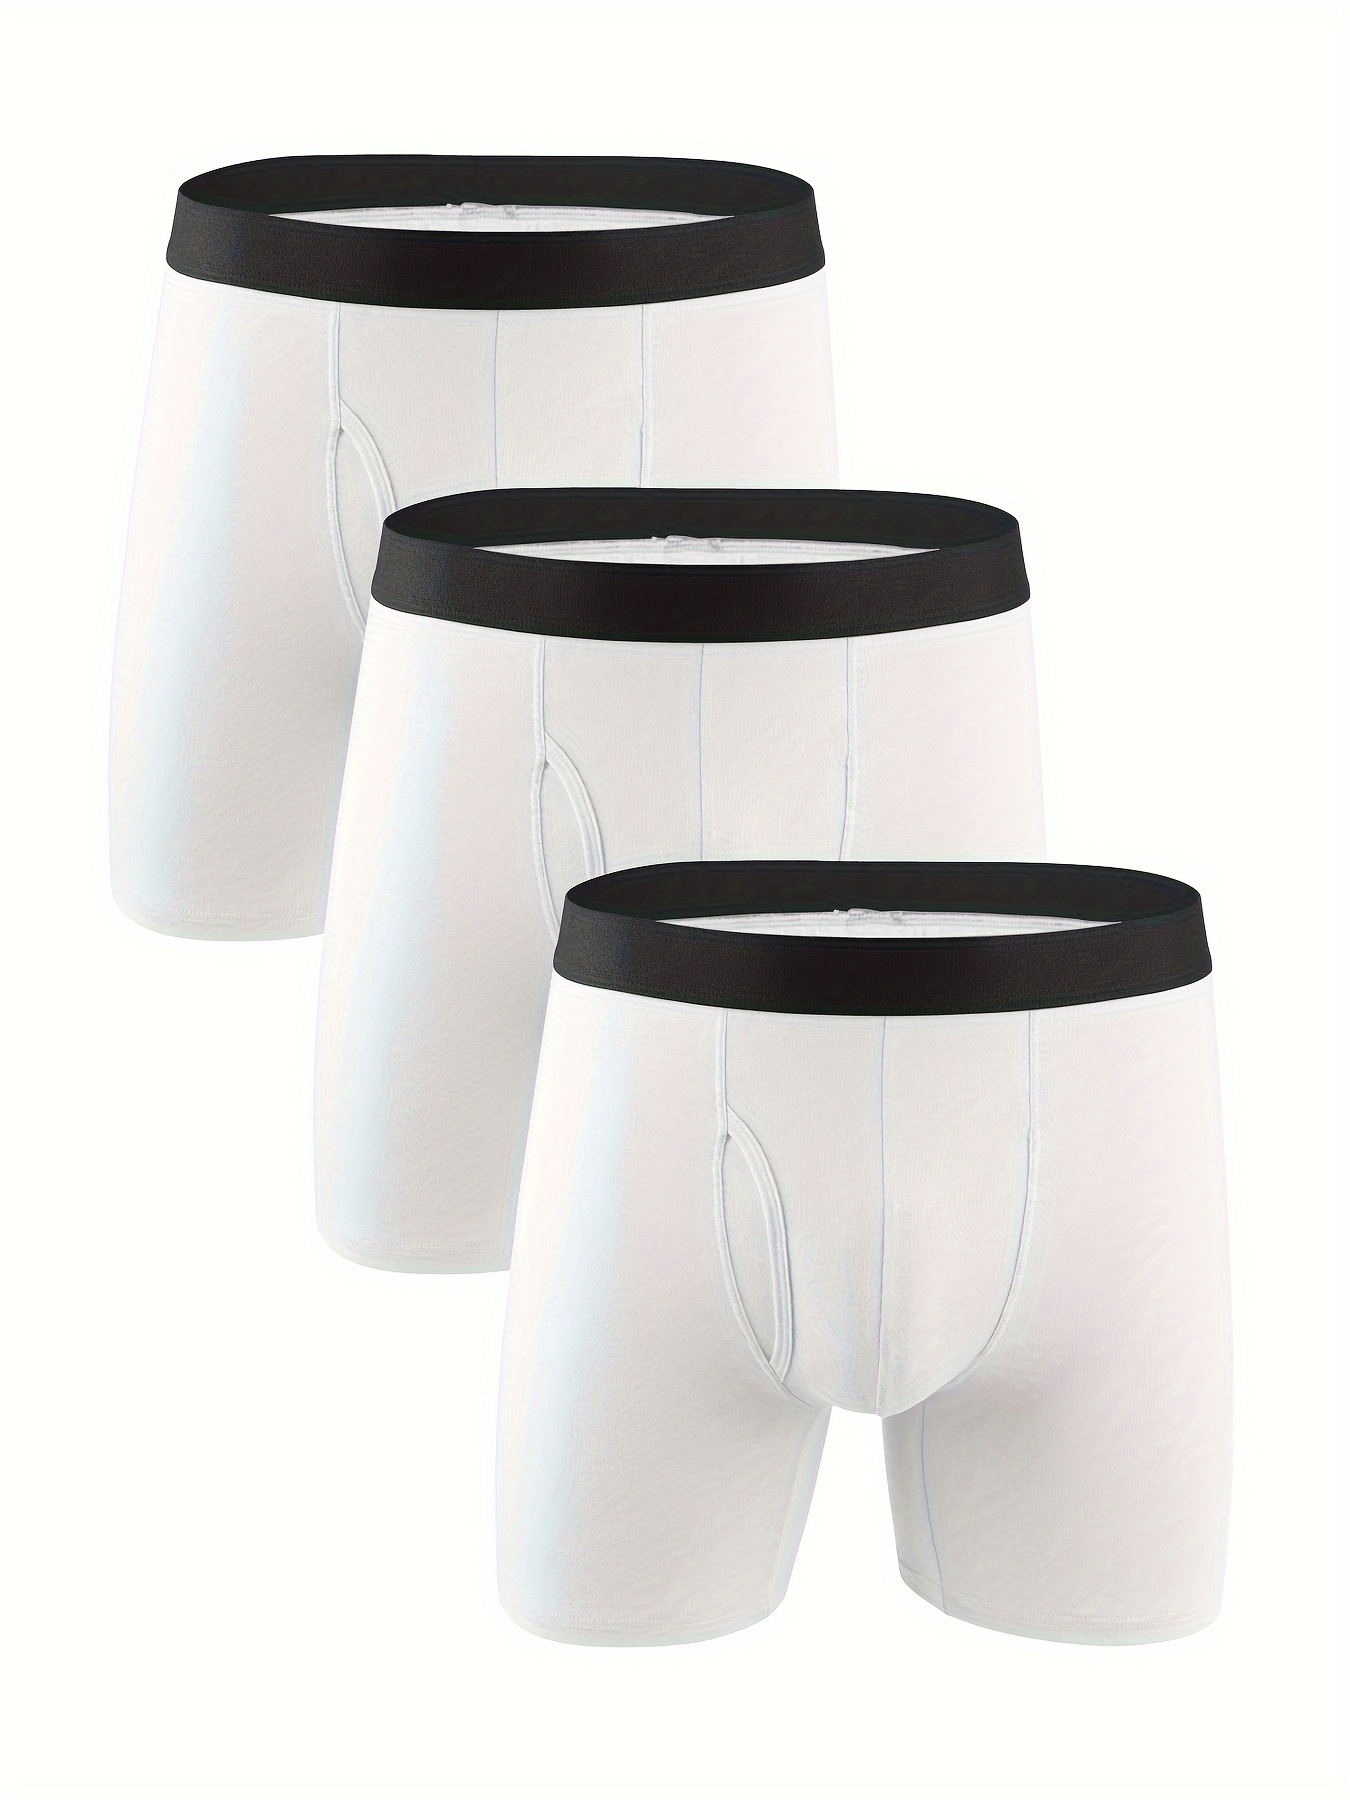 Boxer Shorts Men Panties Long Leg Cotton Underpants Male Underwear